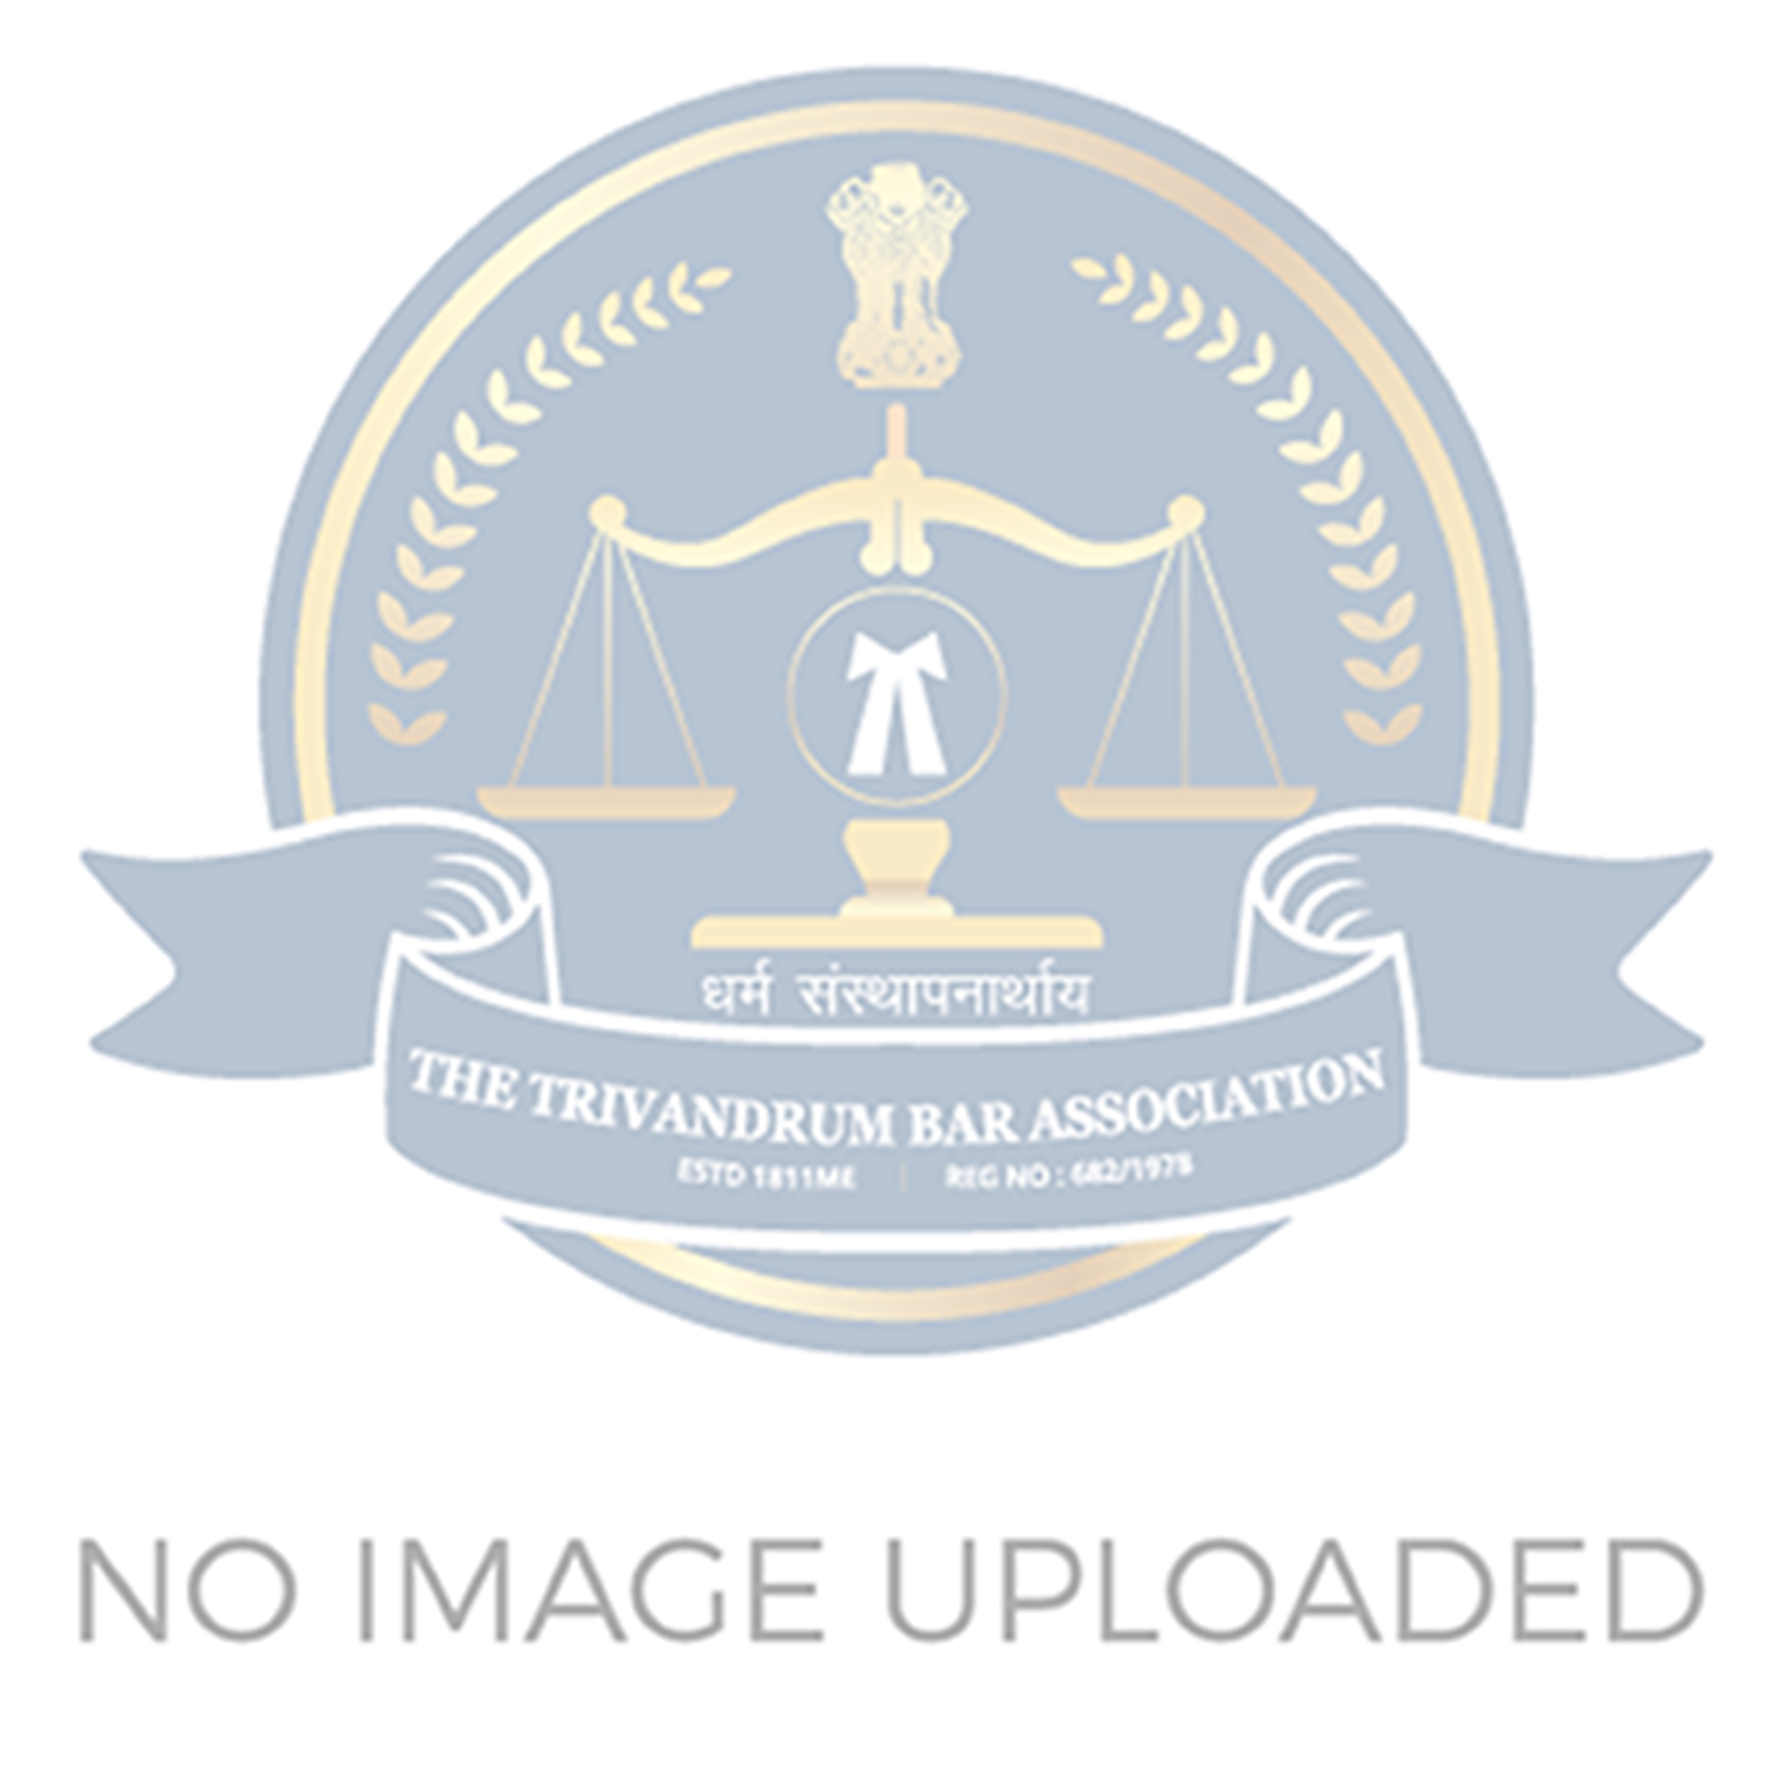 Trivandrum Bar Association